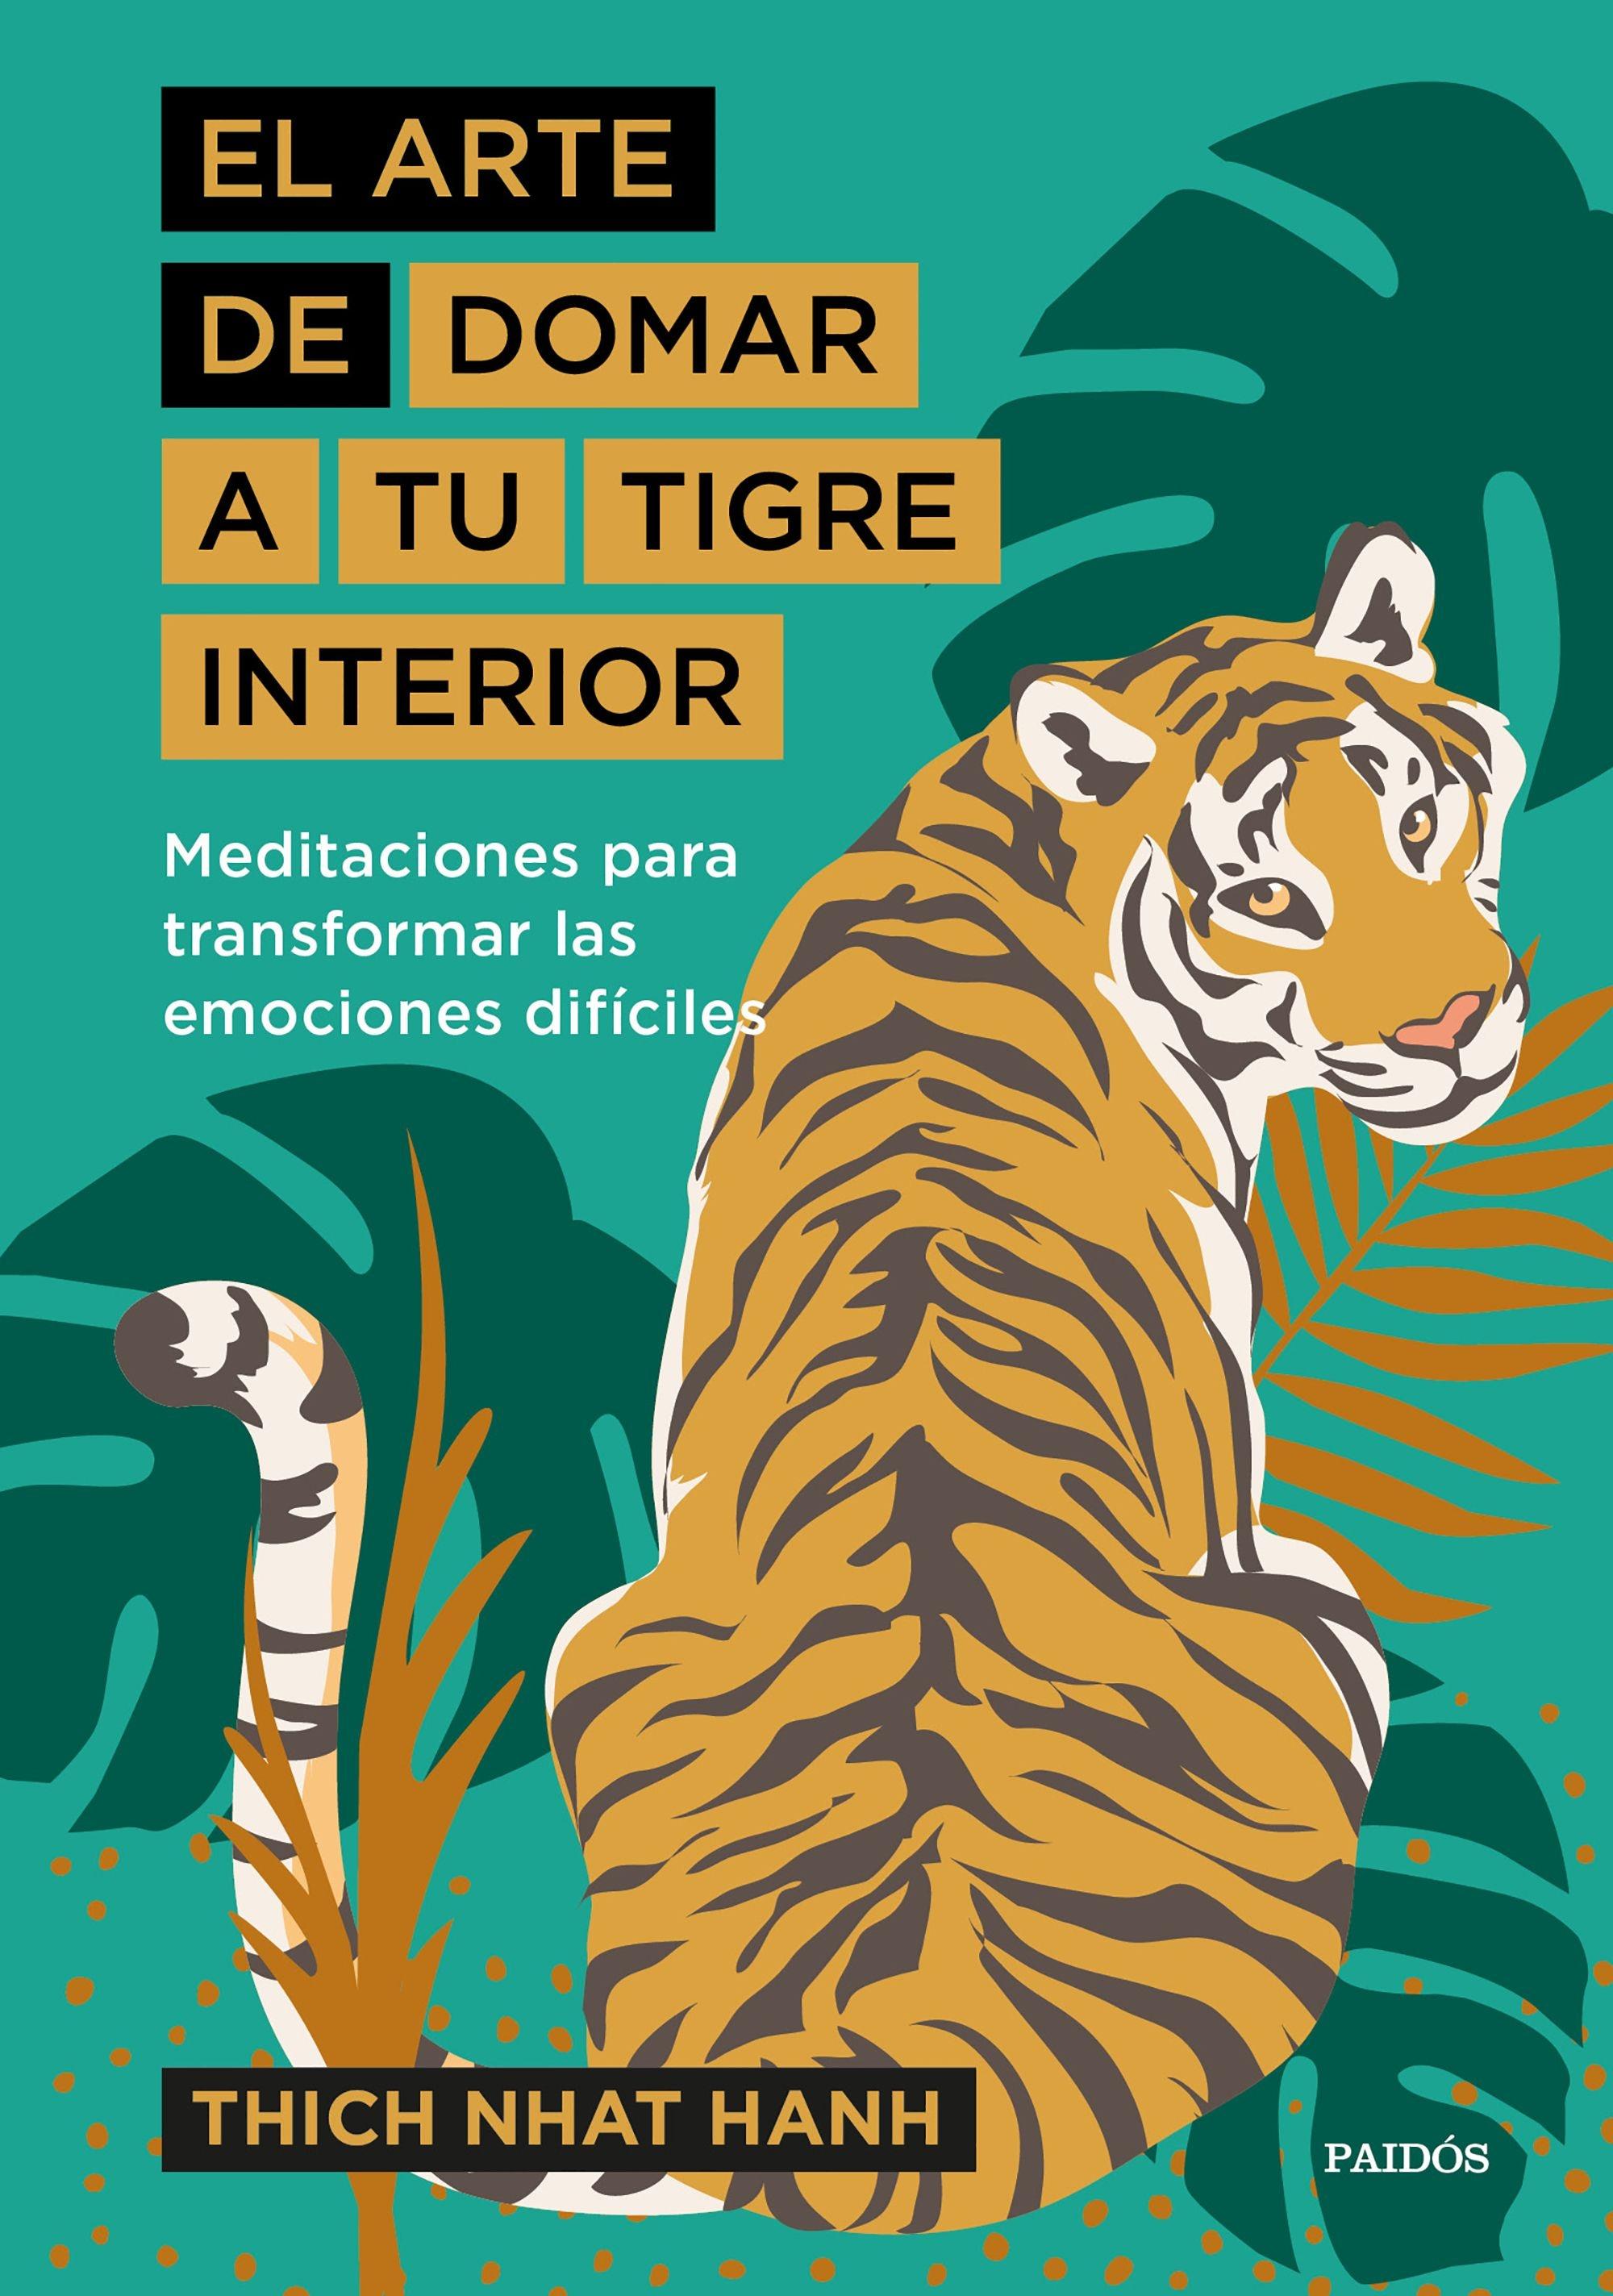 Arte de domar a tu tigre interior, El "Meditaciones para transformar las emociones difíciles"